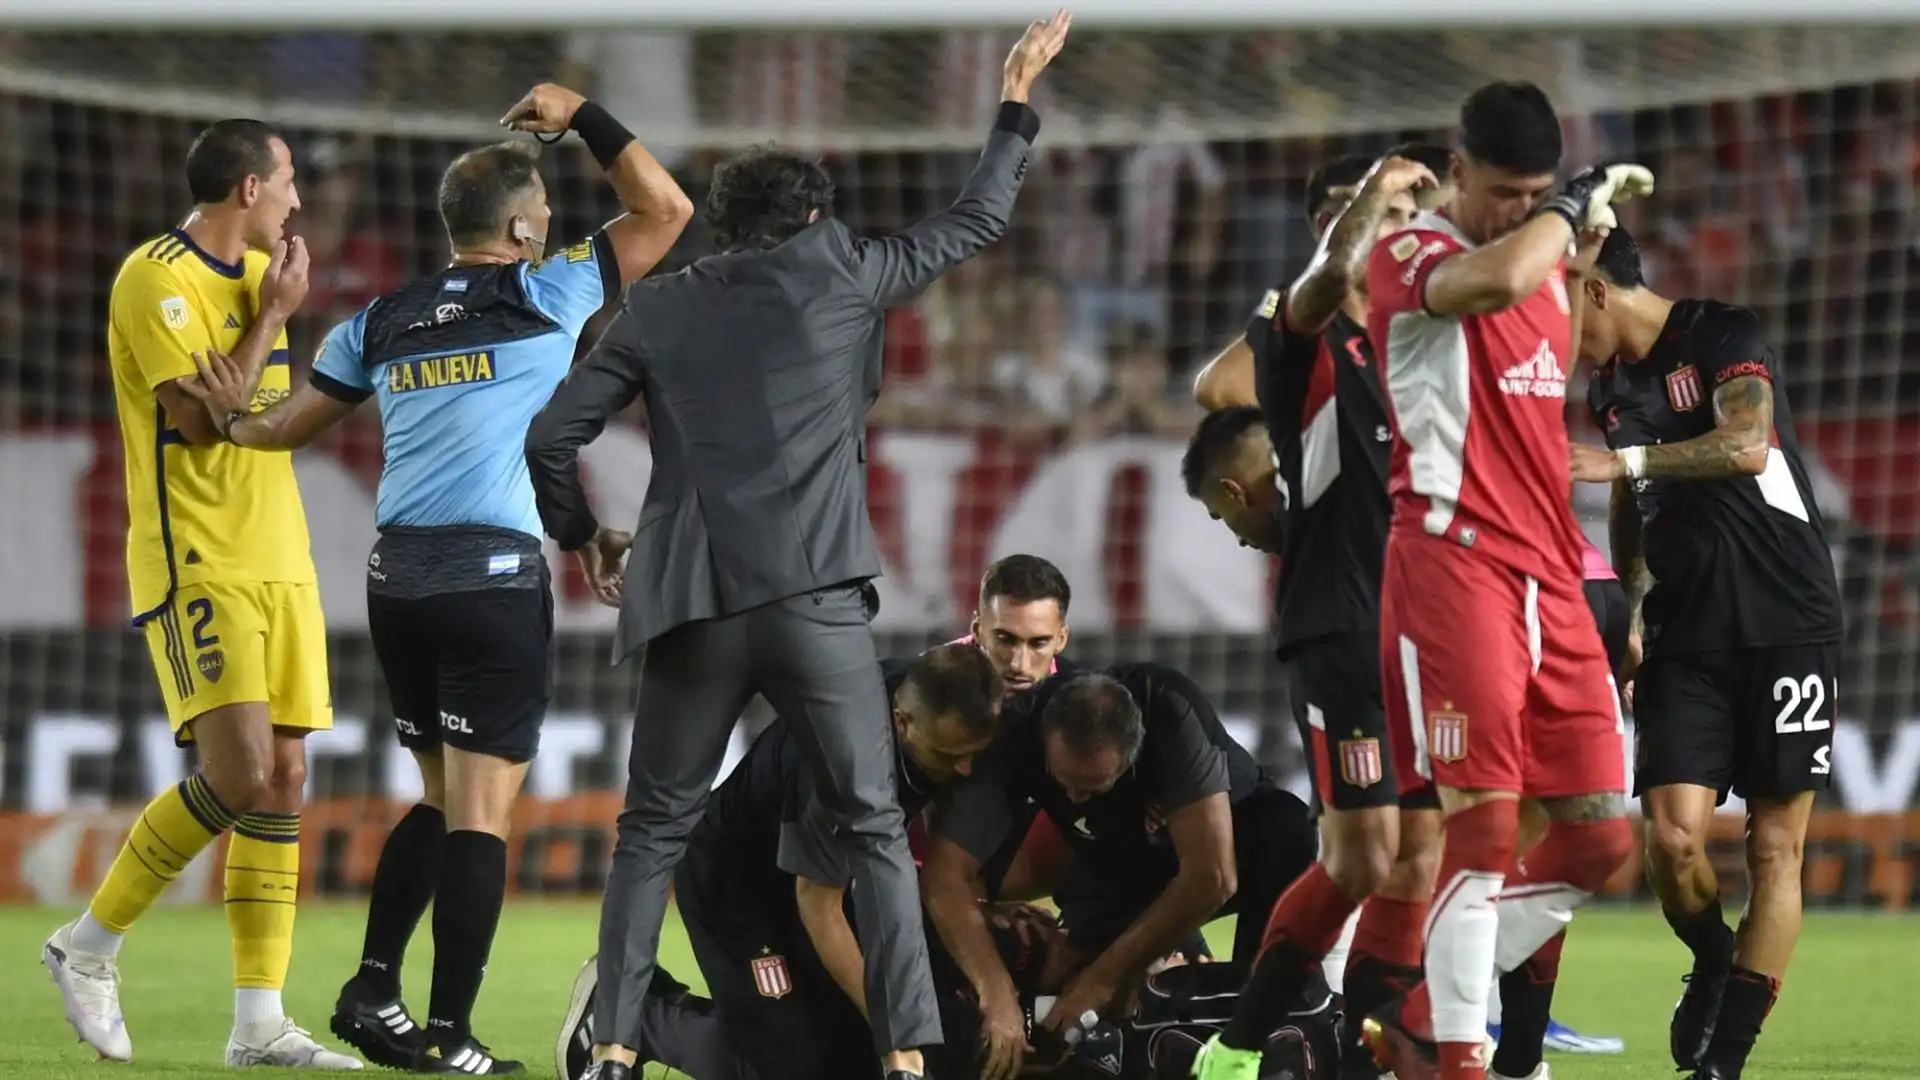 Momenti di grande paura nel match del campionato argentino tra Estudiantes e Boca Juniors